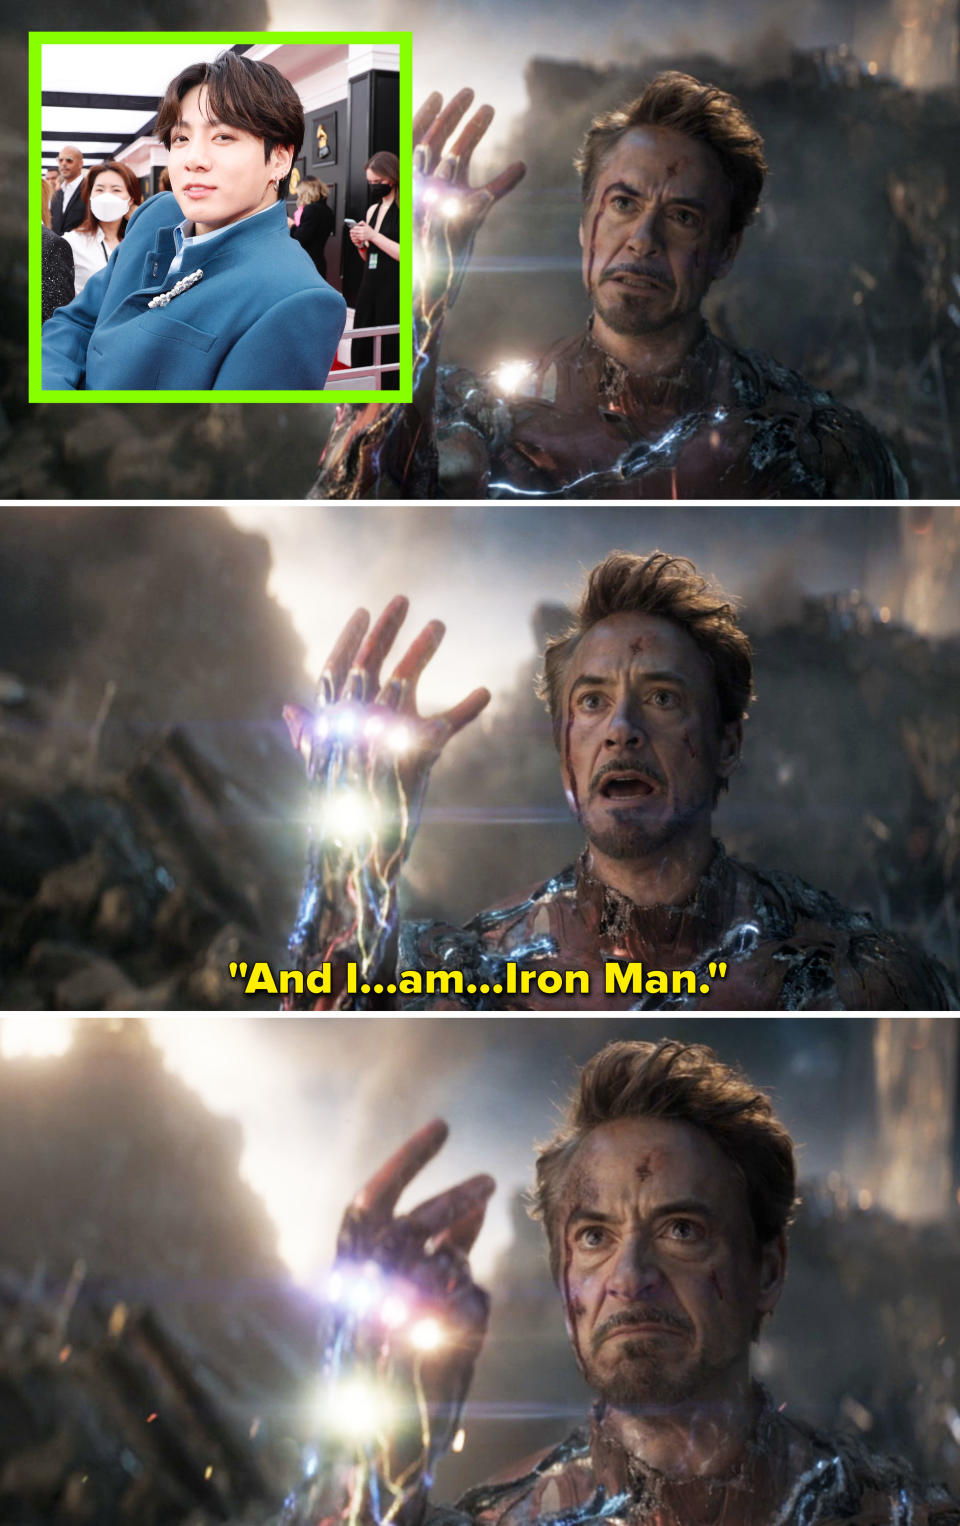 Robert Downey Jr saying "I am Iron Man"